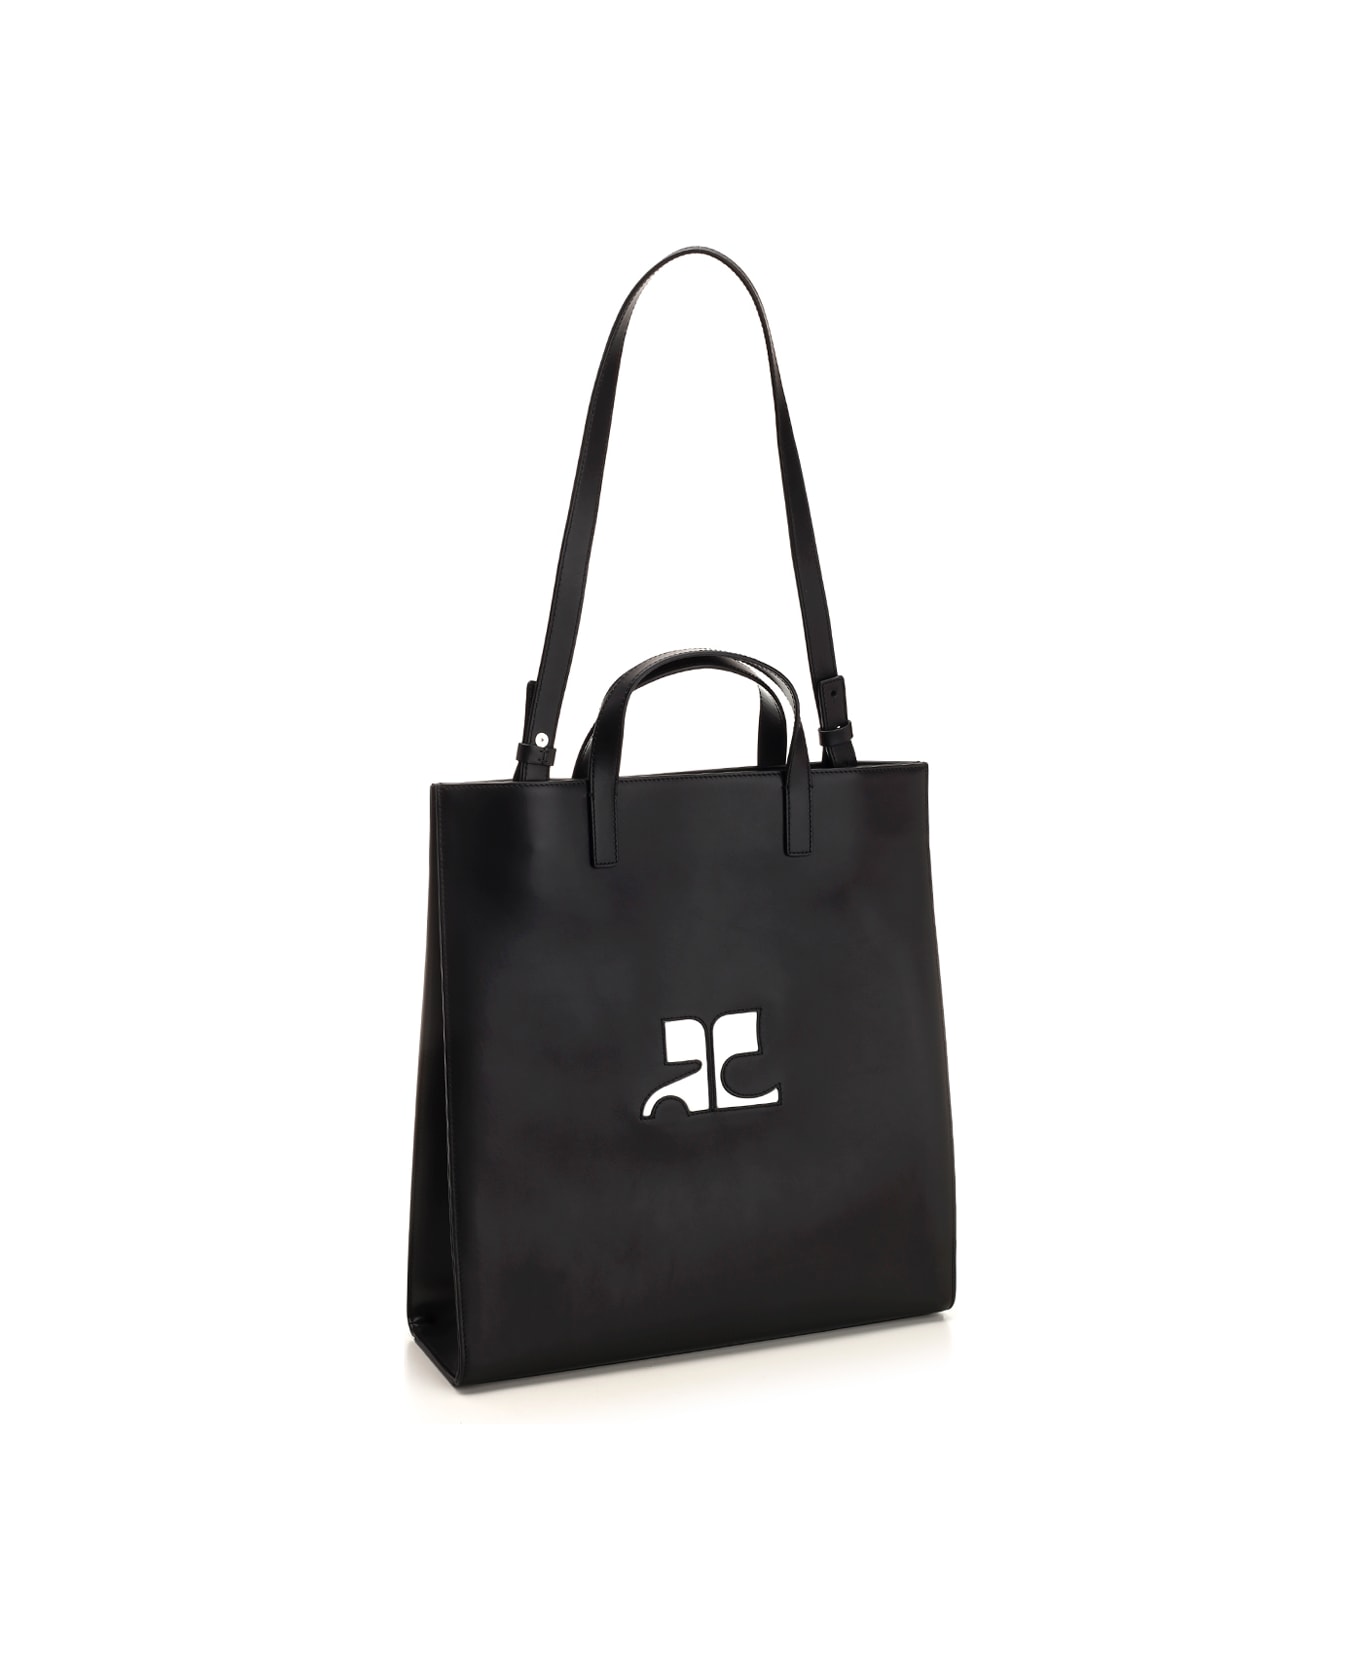 Courrèges 'heritage Tote' Bag In Black Calfskin - BLACK